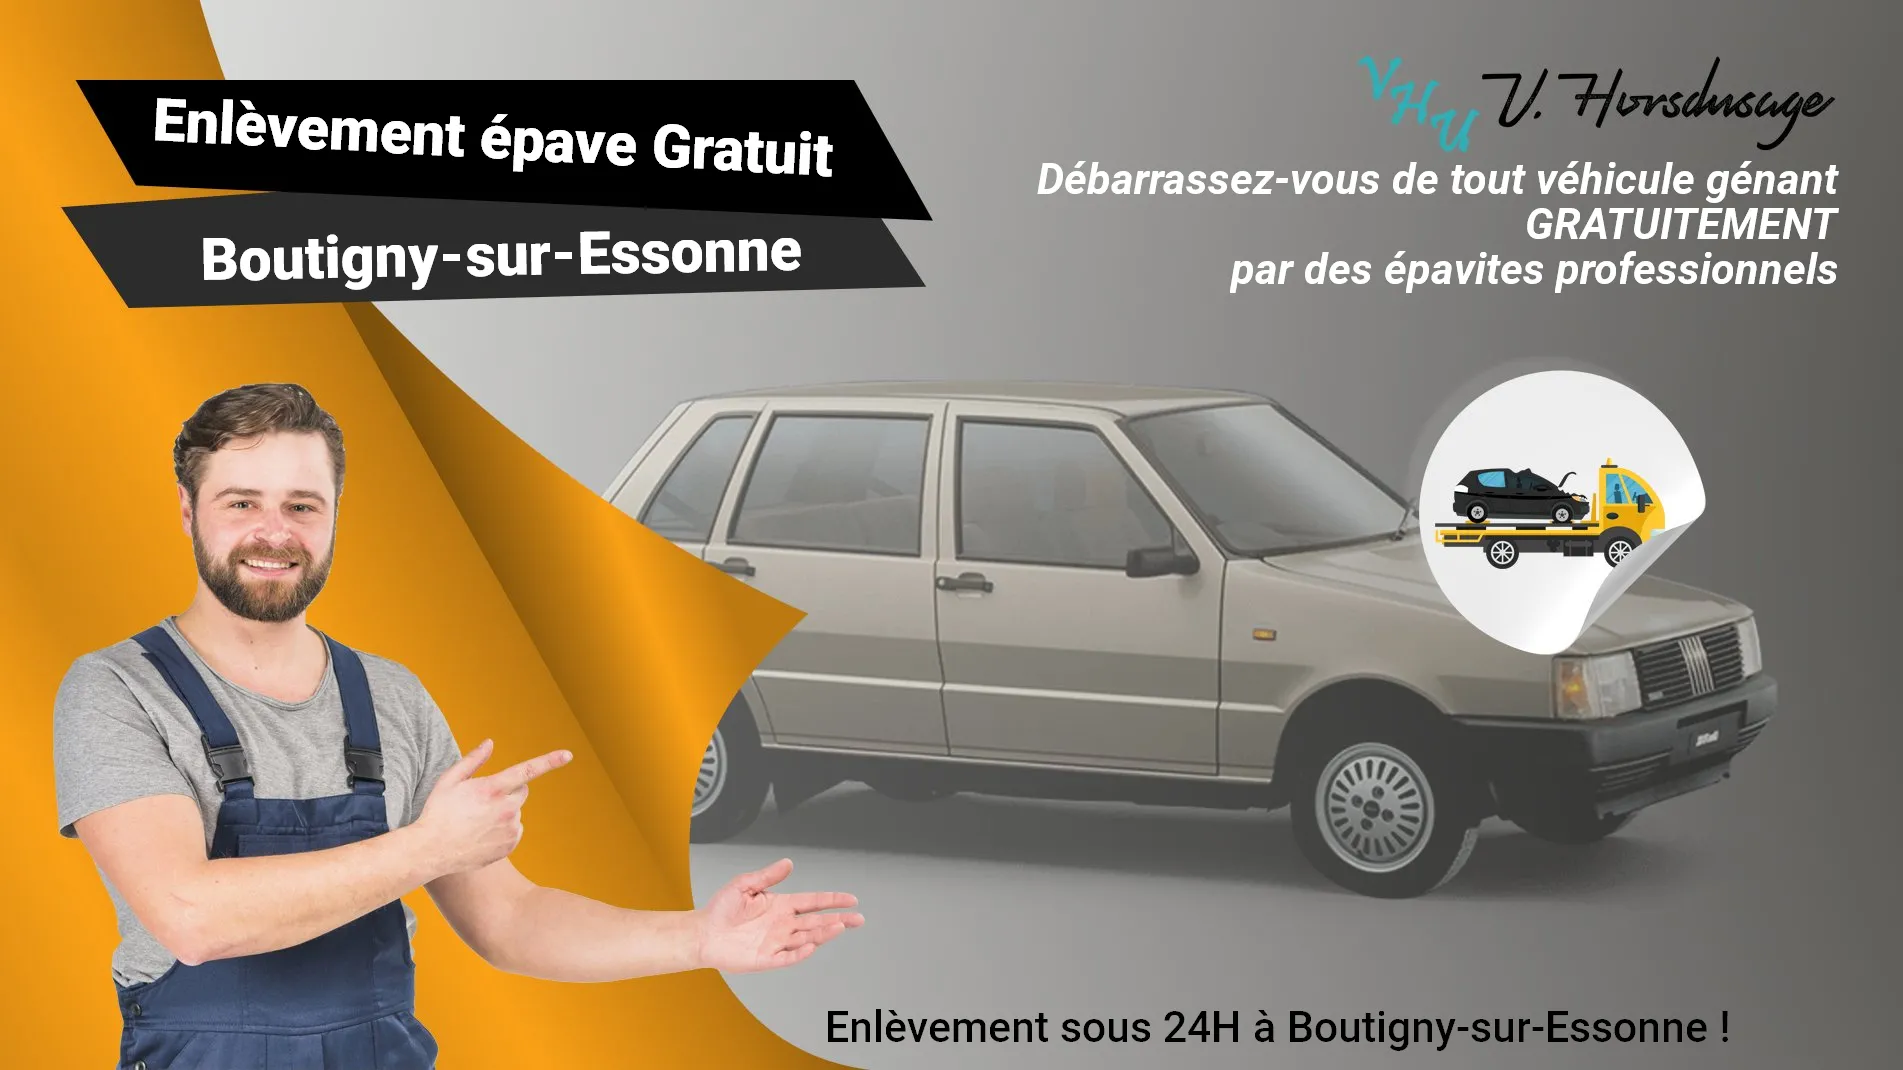 Pour un enlèvement gratuit à Boutigny-sur-Essonne, contactez nos épavistes agréé VHU